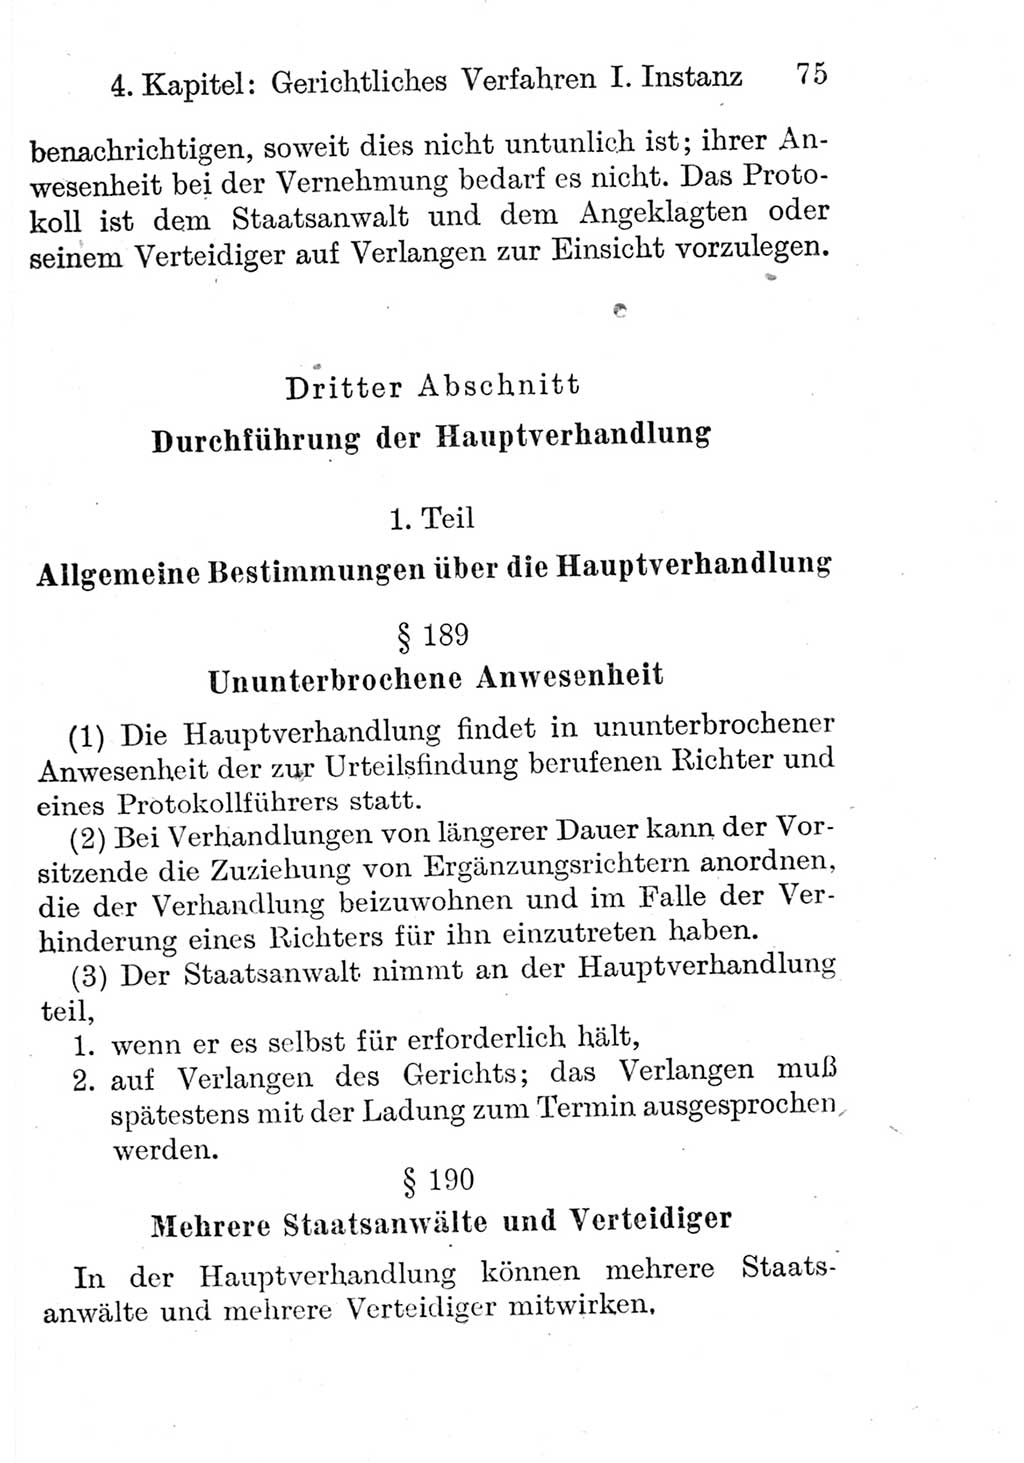 Strafprozeßordnung (StPO), Gerichtsverfassungsgesetz (GVG), Staatsanwaltsgesetz (StAG) und Jugendgerichtsgesetz (JGG) [Deutsche Demokratische Republik (DDR)] 1952, Seite 75 (StPO GVG StAG JGG DDR 1952, S. 75)